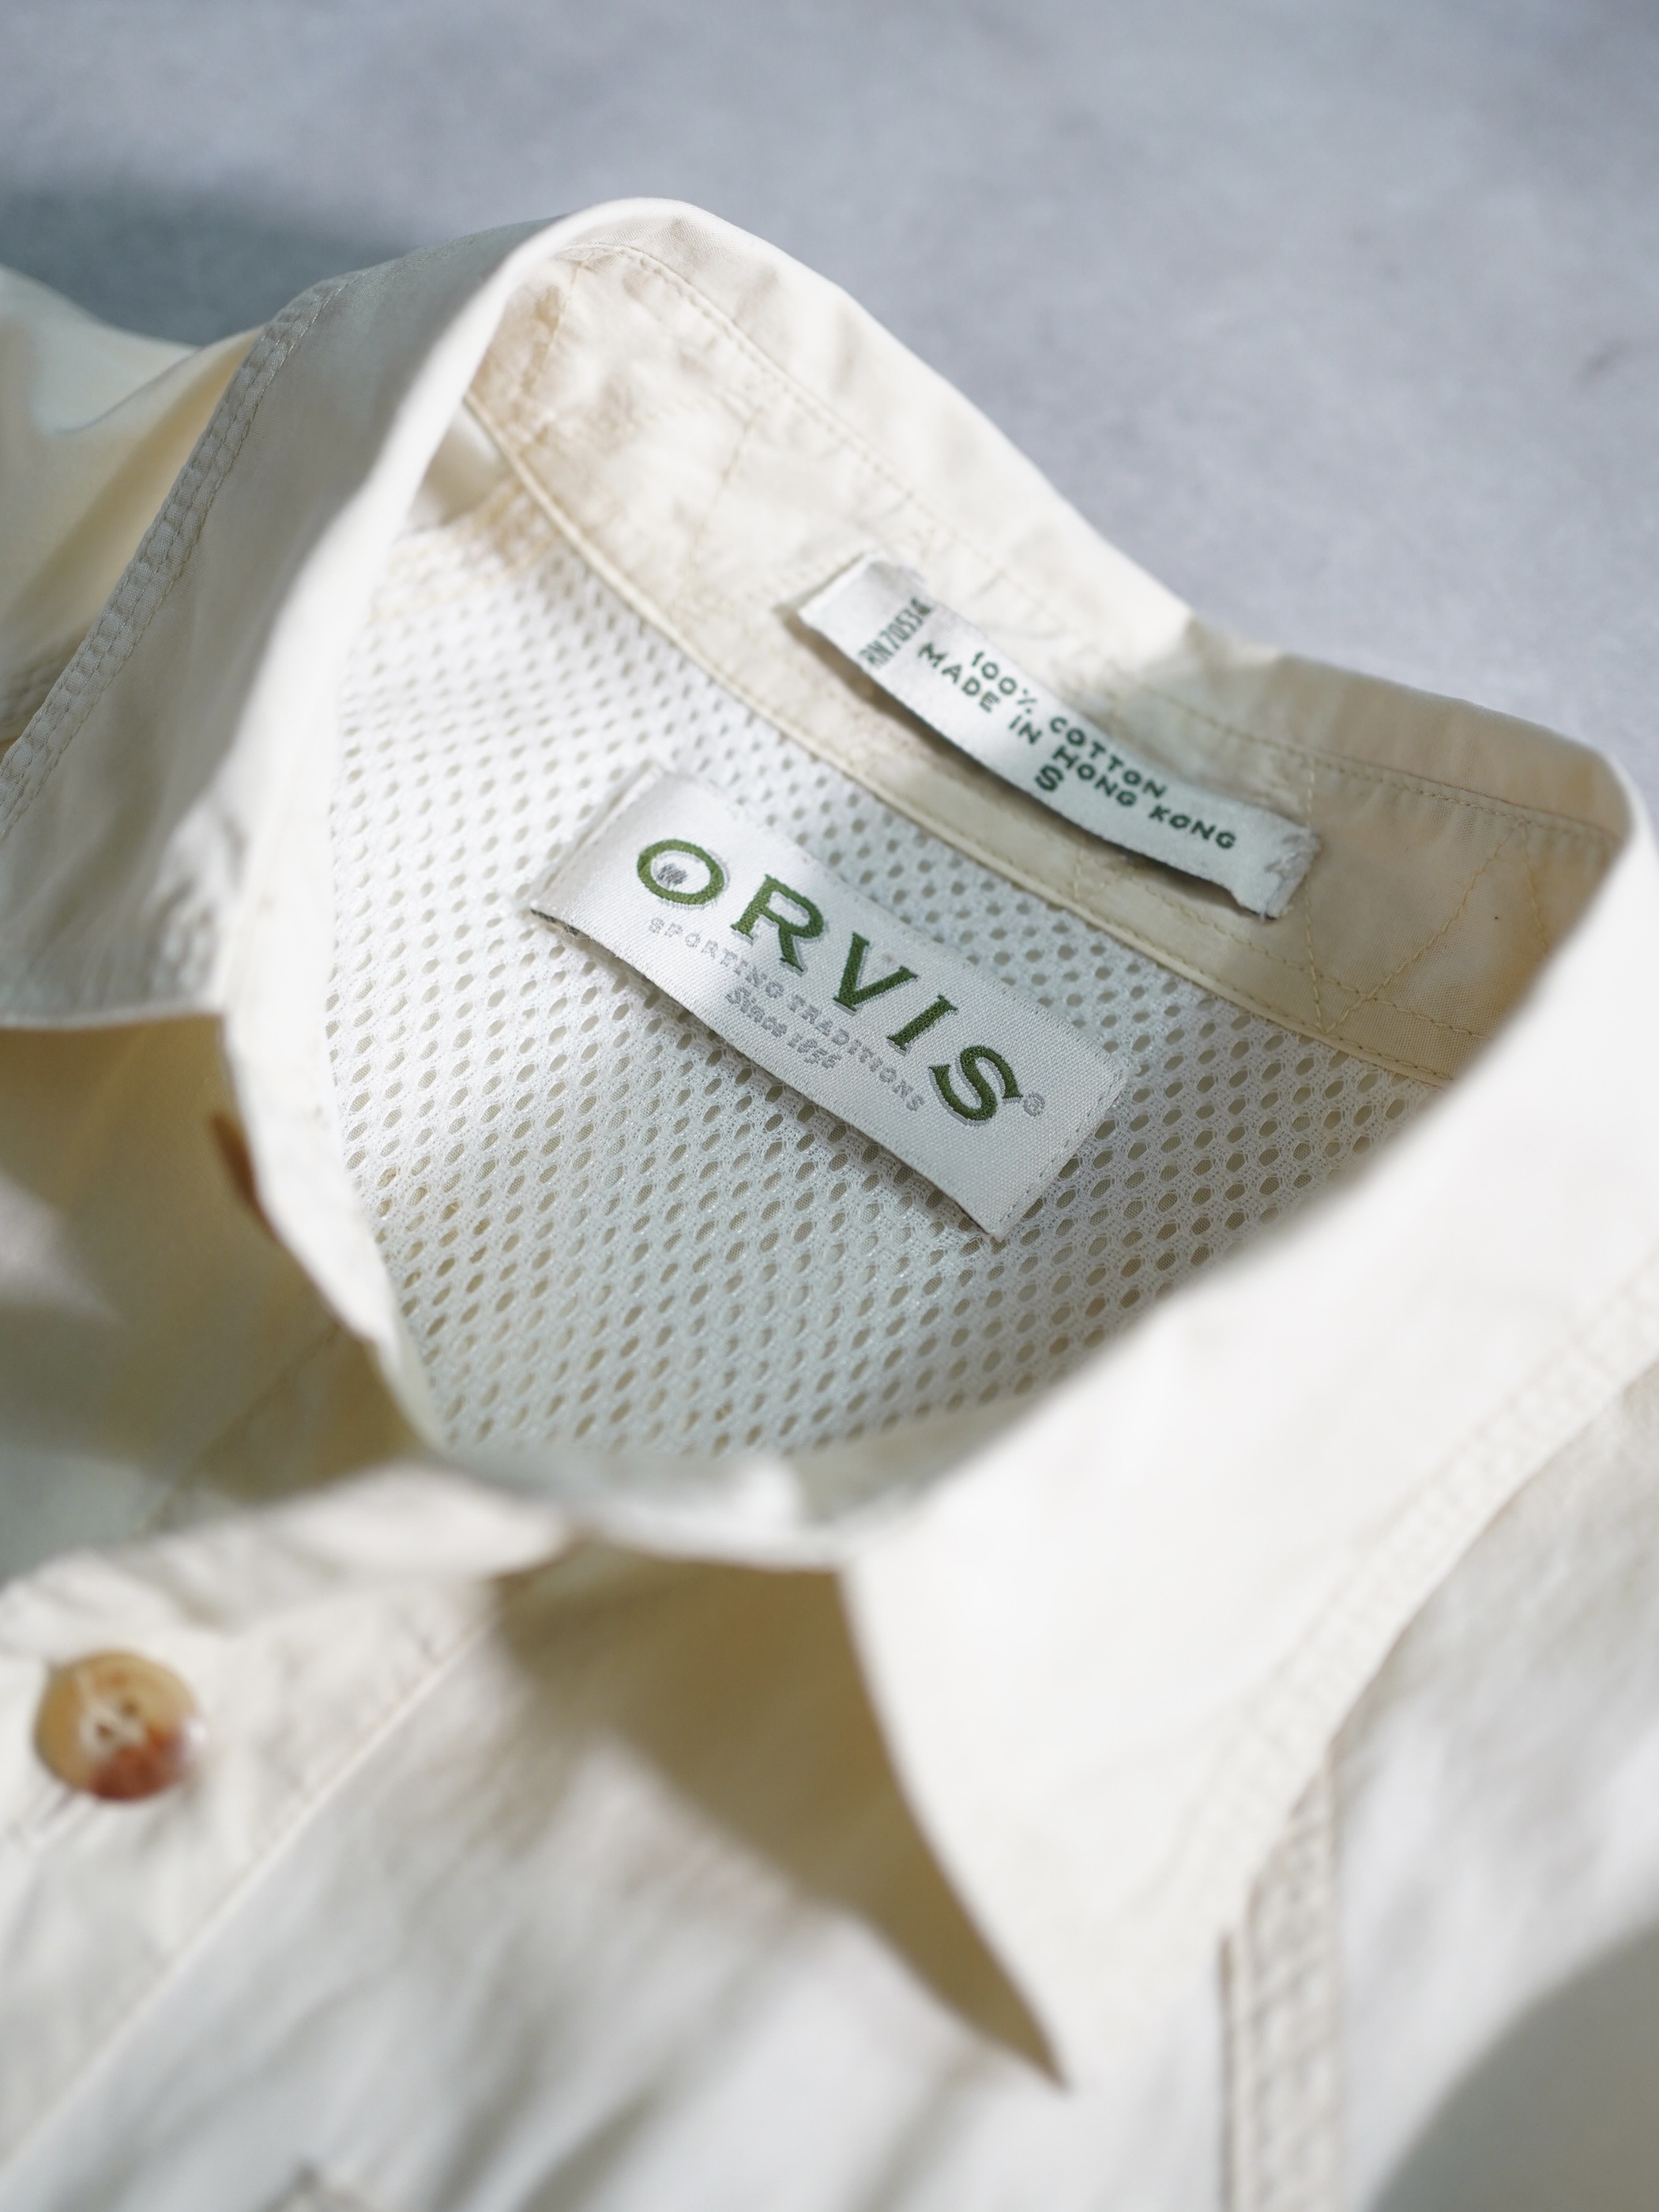 ORVIS Cotton fishing shirts / Made in Hong Kong